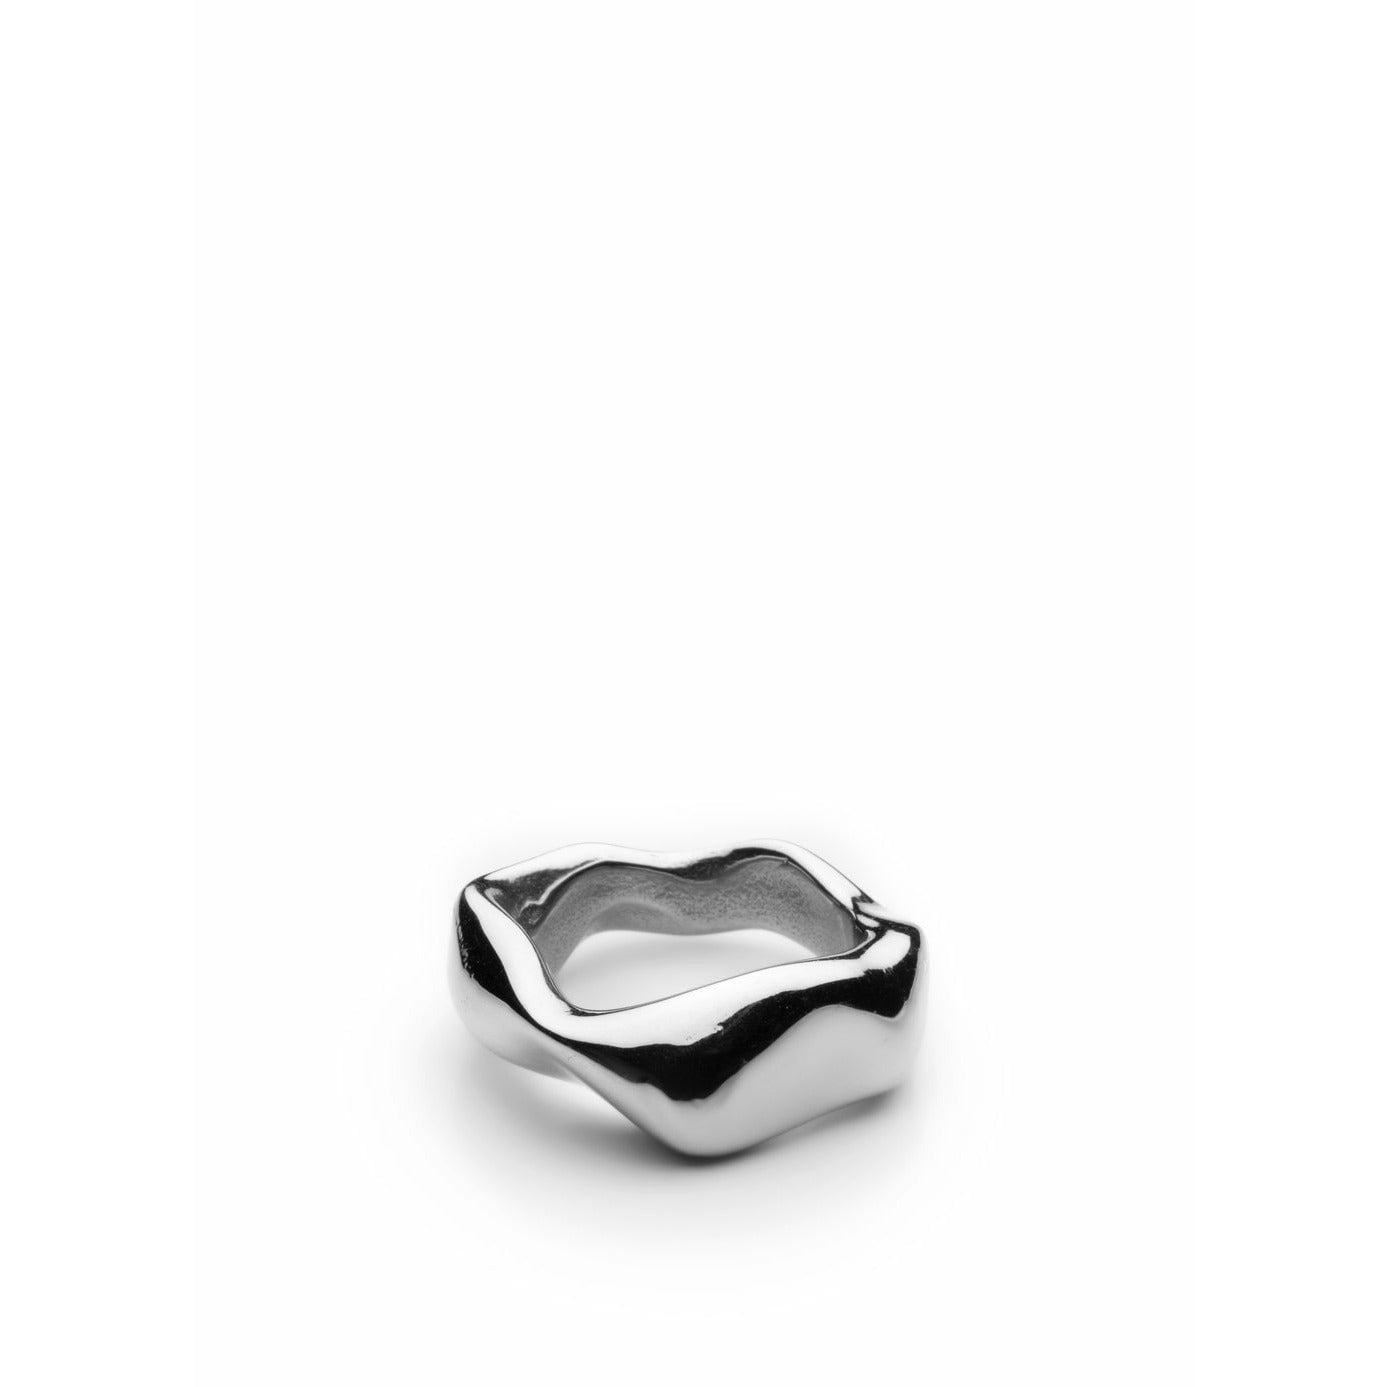 Skultuna Chunky Ring Mała polerowana stal, Ø1,6 cm